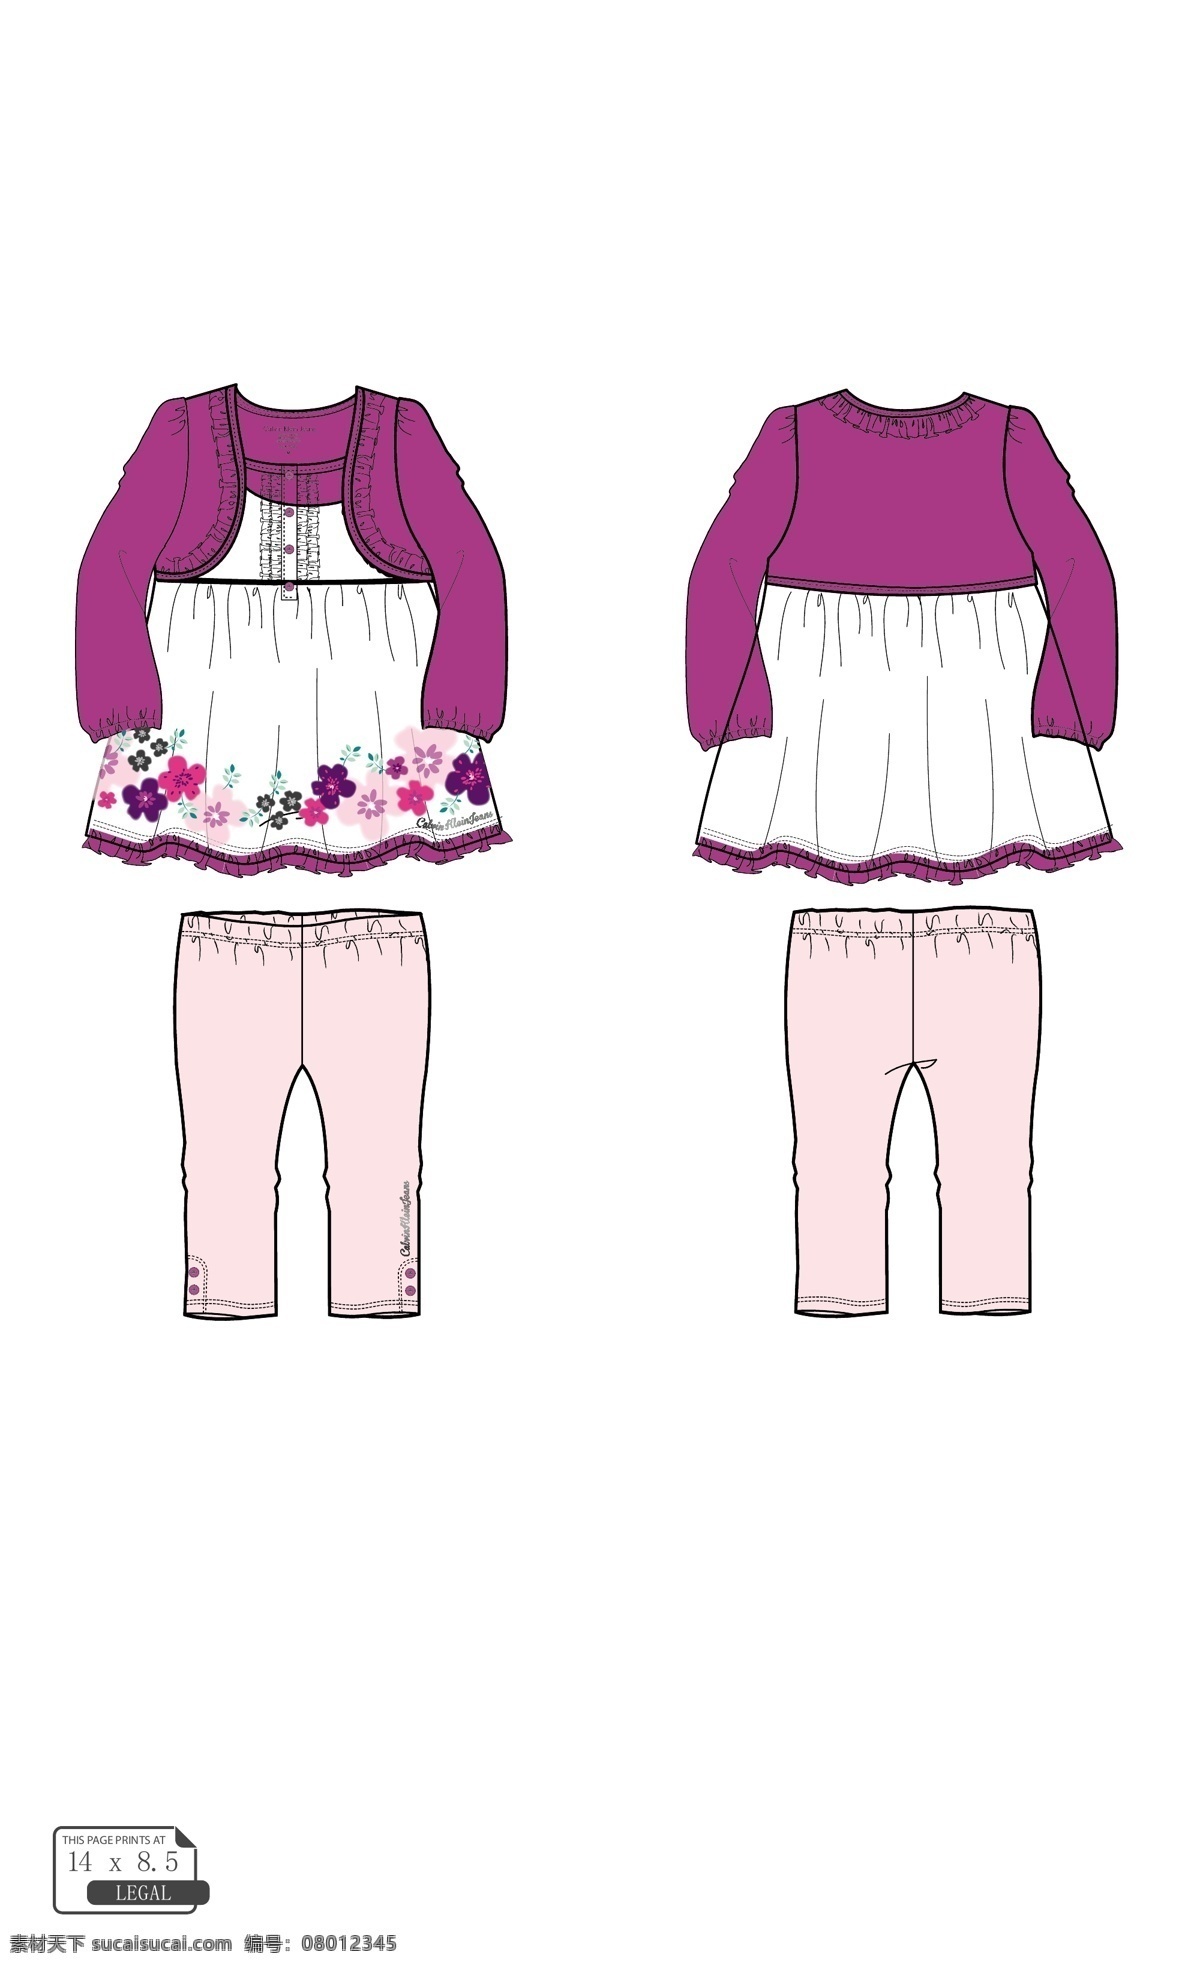 服装设计图 外贸服装 童装设计 童装 外贸 效果图 款式图 服装设计 小童套装